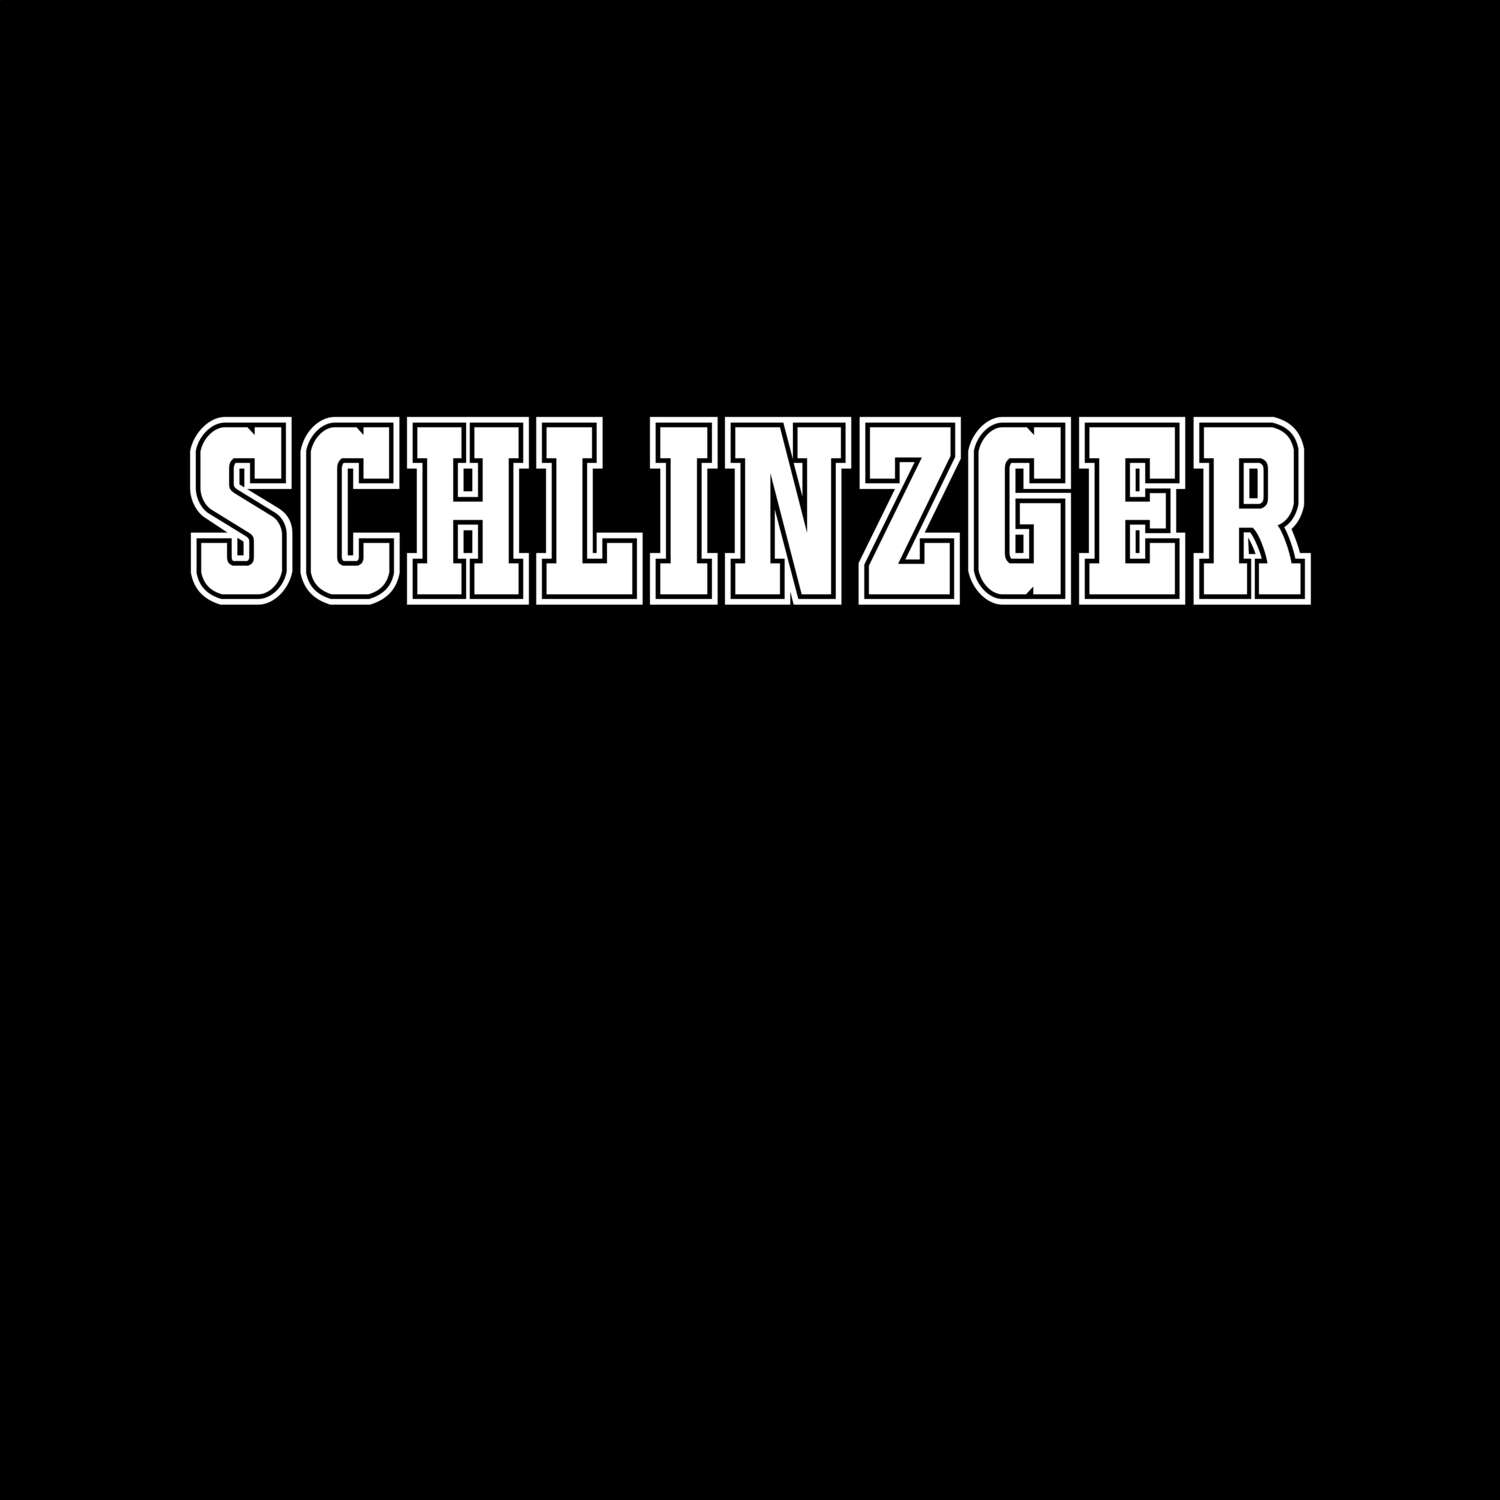 Schlinzger T-Shirt »Classic«